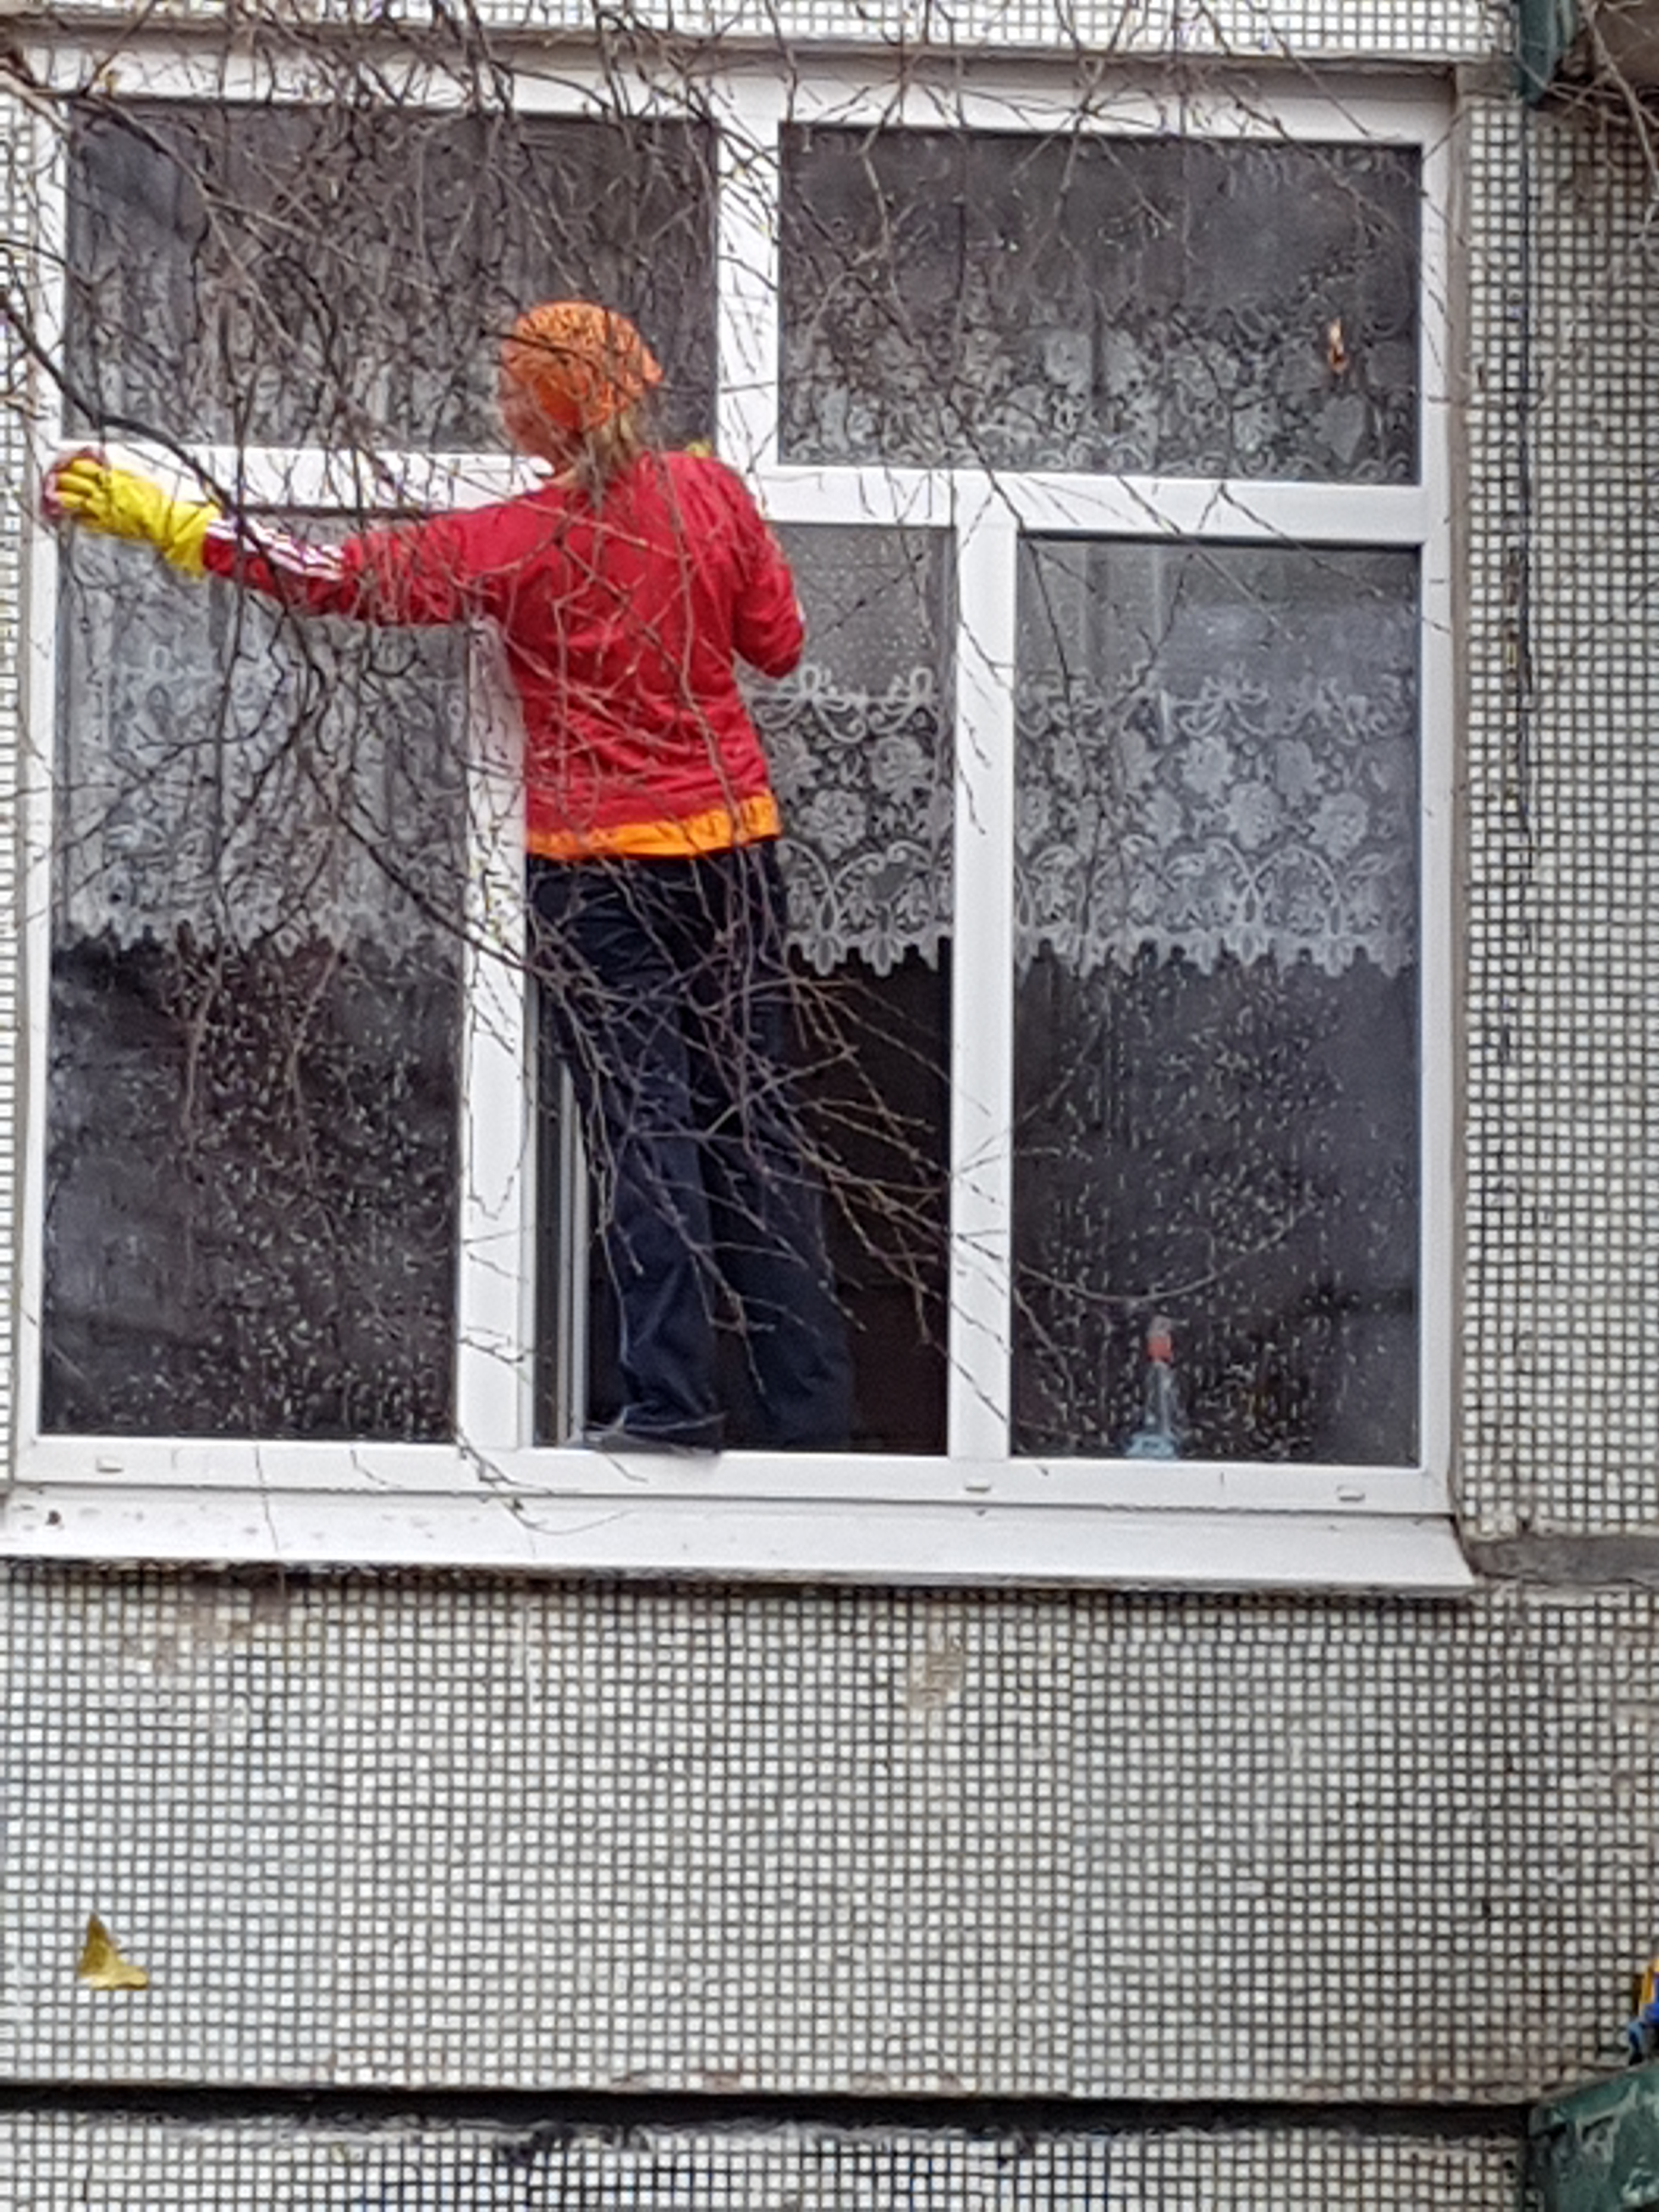 Блестящая уборка — как помыть окна без разводов?